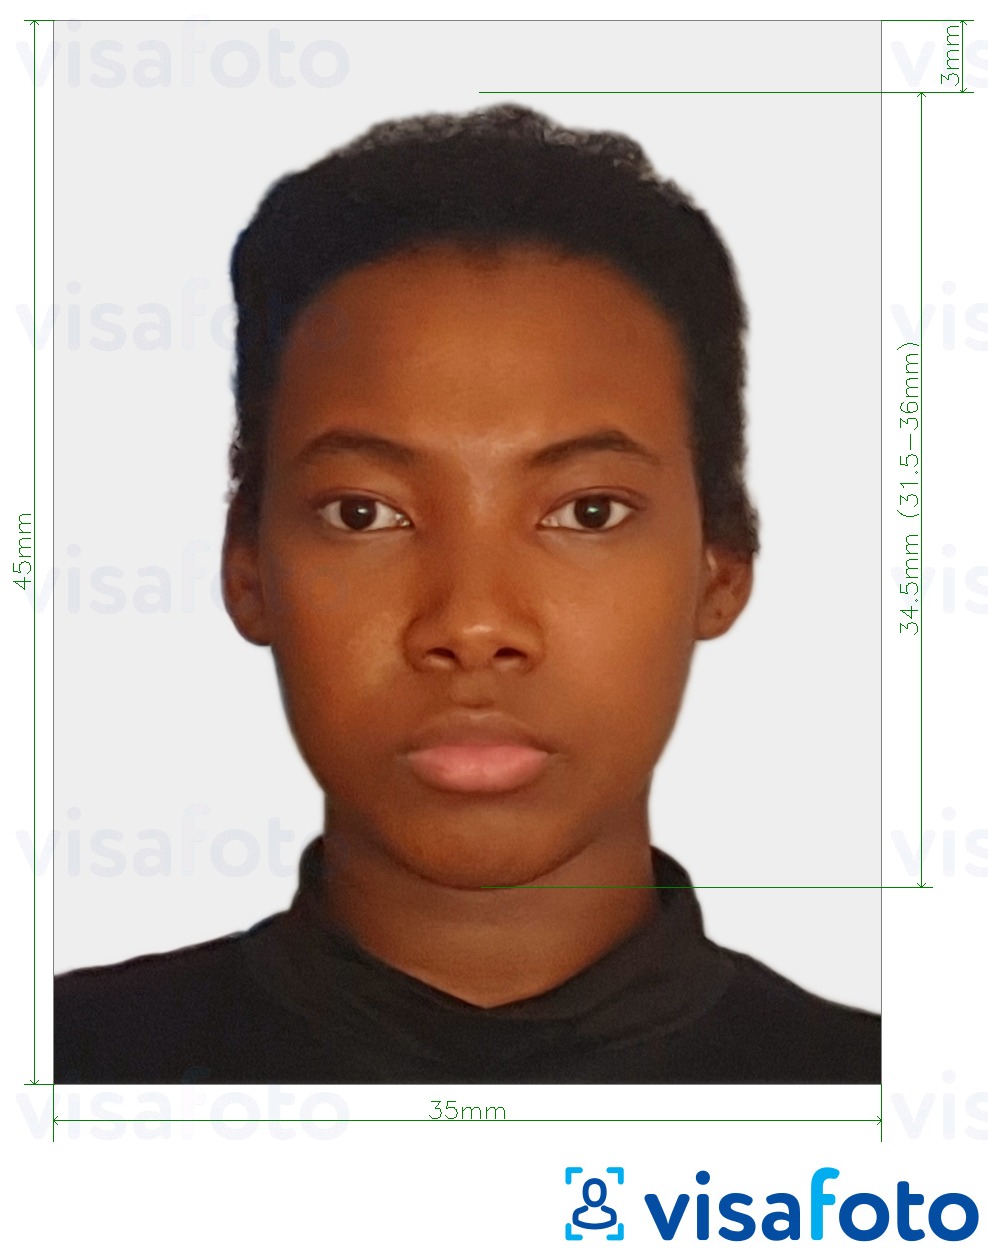 Exemple de foto per a Passaport Suriname 45x35 mm (1.77x1.37 polzades) amb la mida exacta especificada